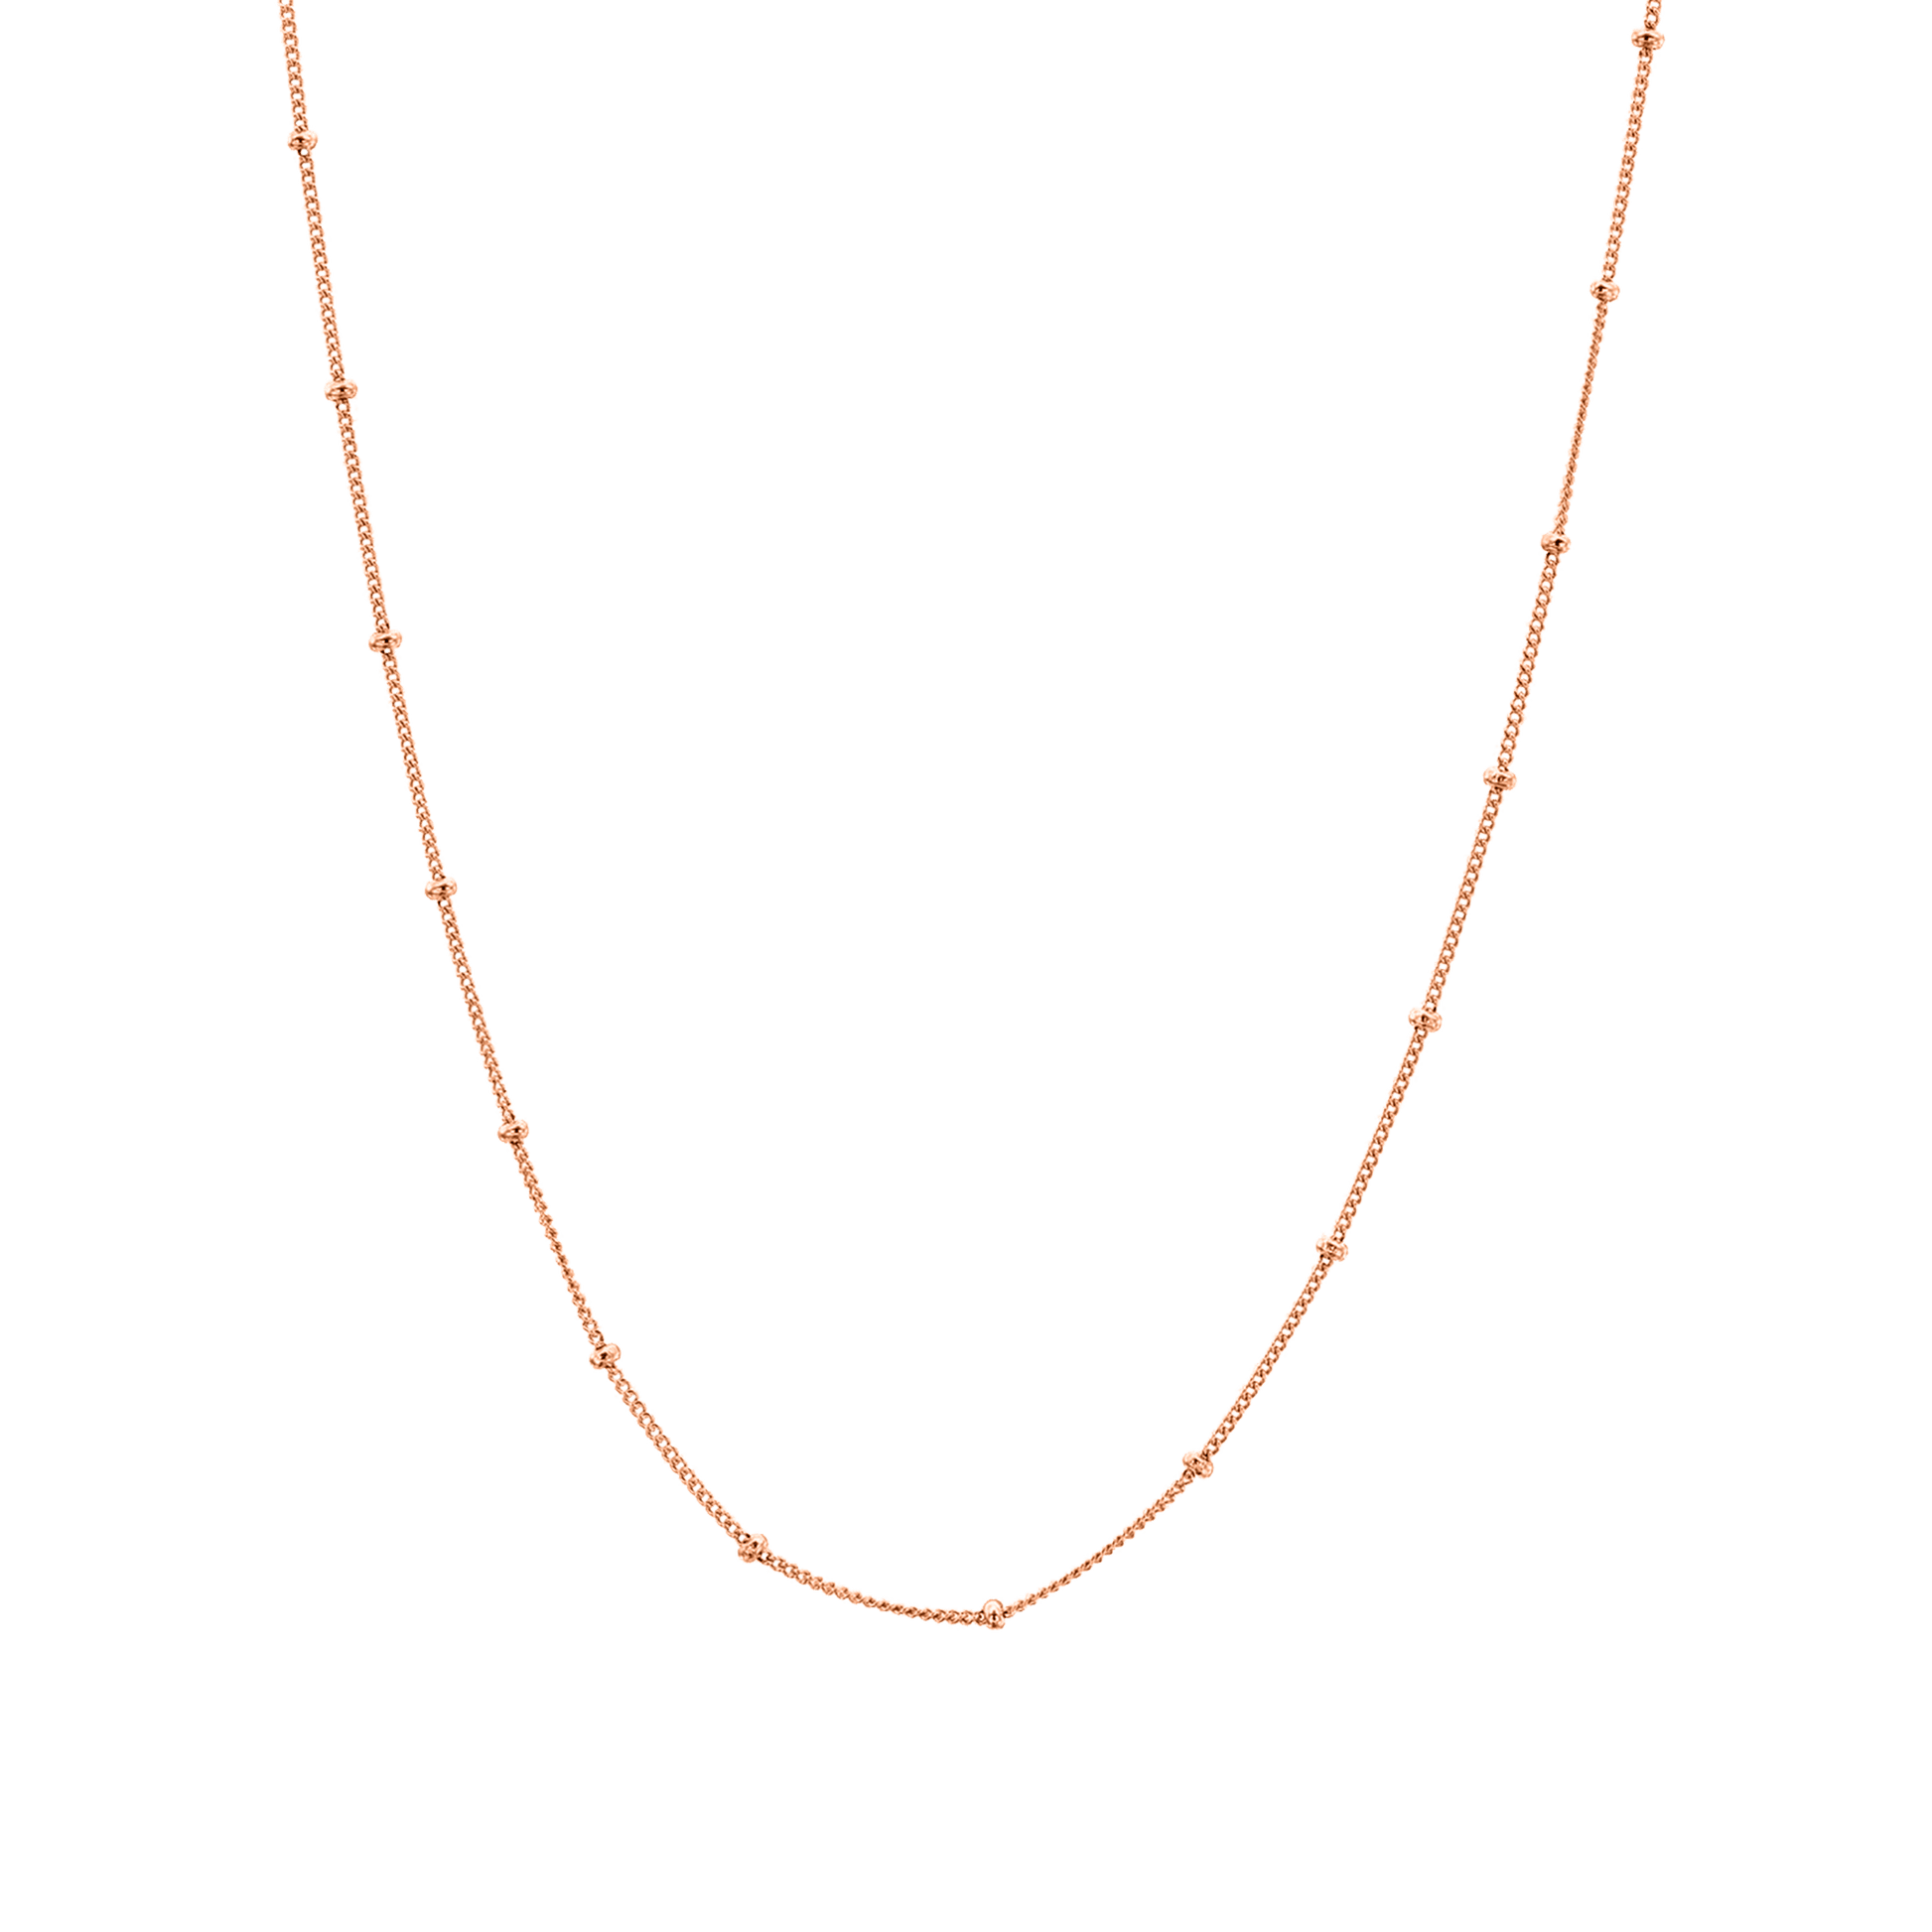 Saturn Chain - 18K Rose Vermeil Chains magal-dev 